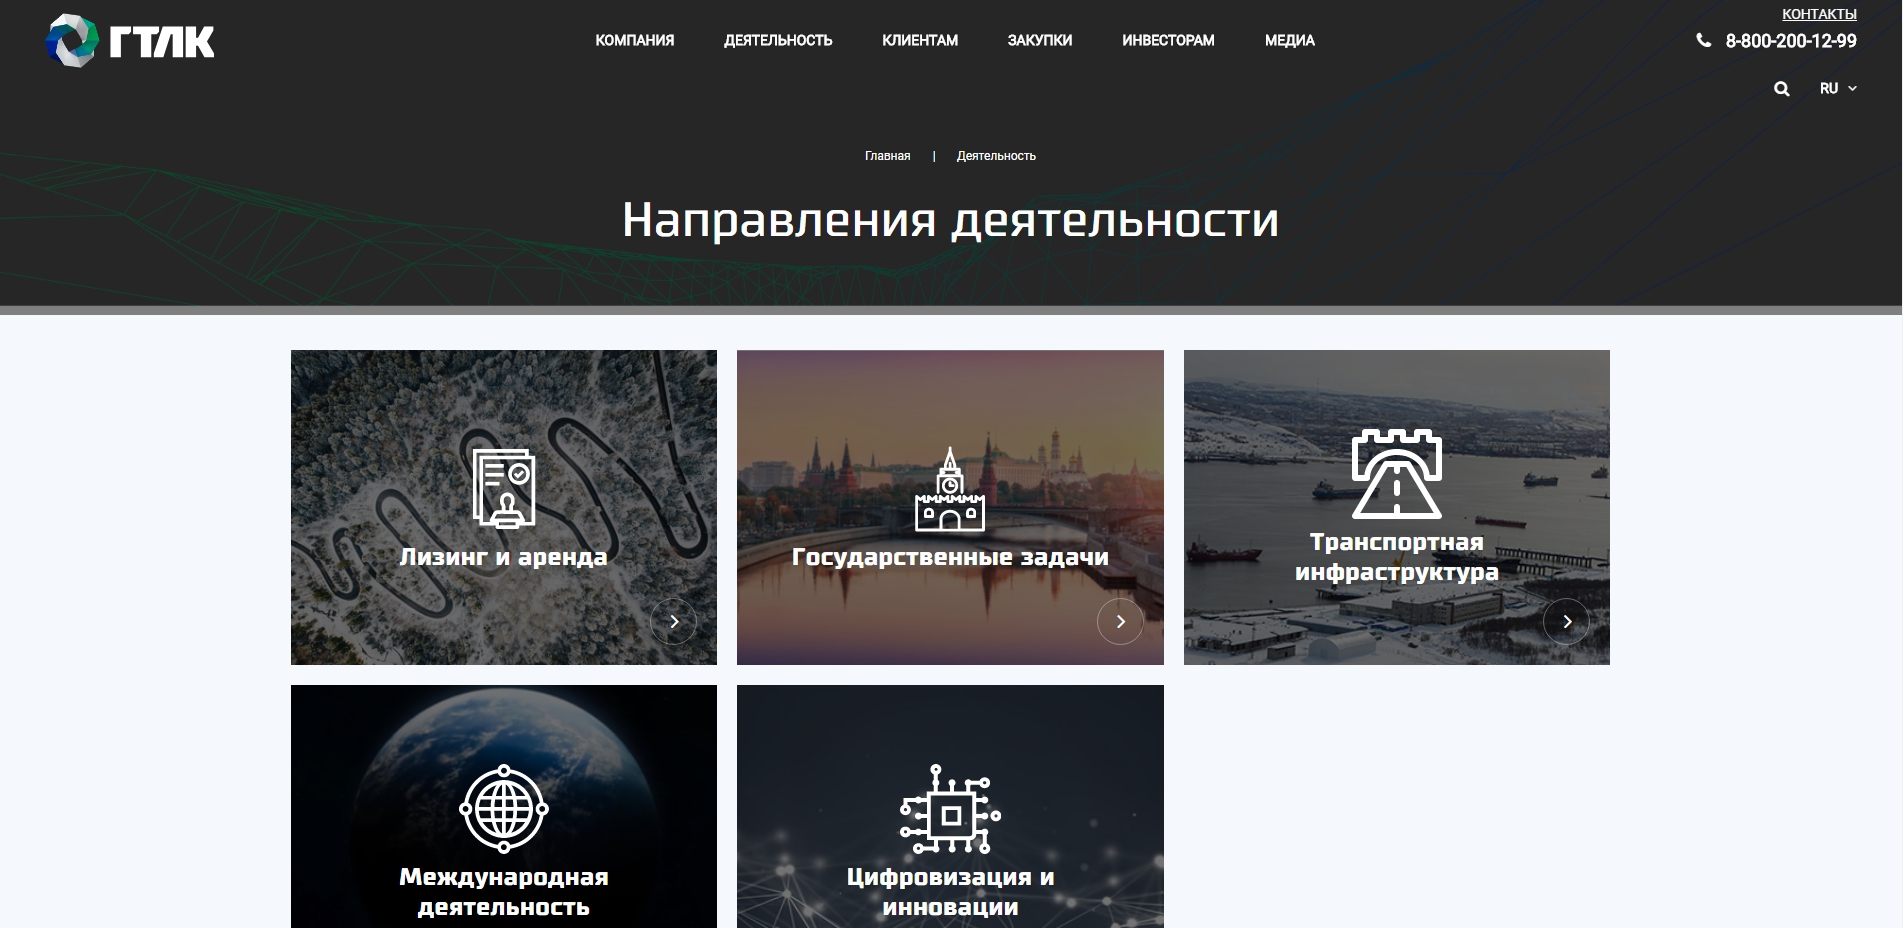 корпоративный сайт для пао «гтлк»  российской версии